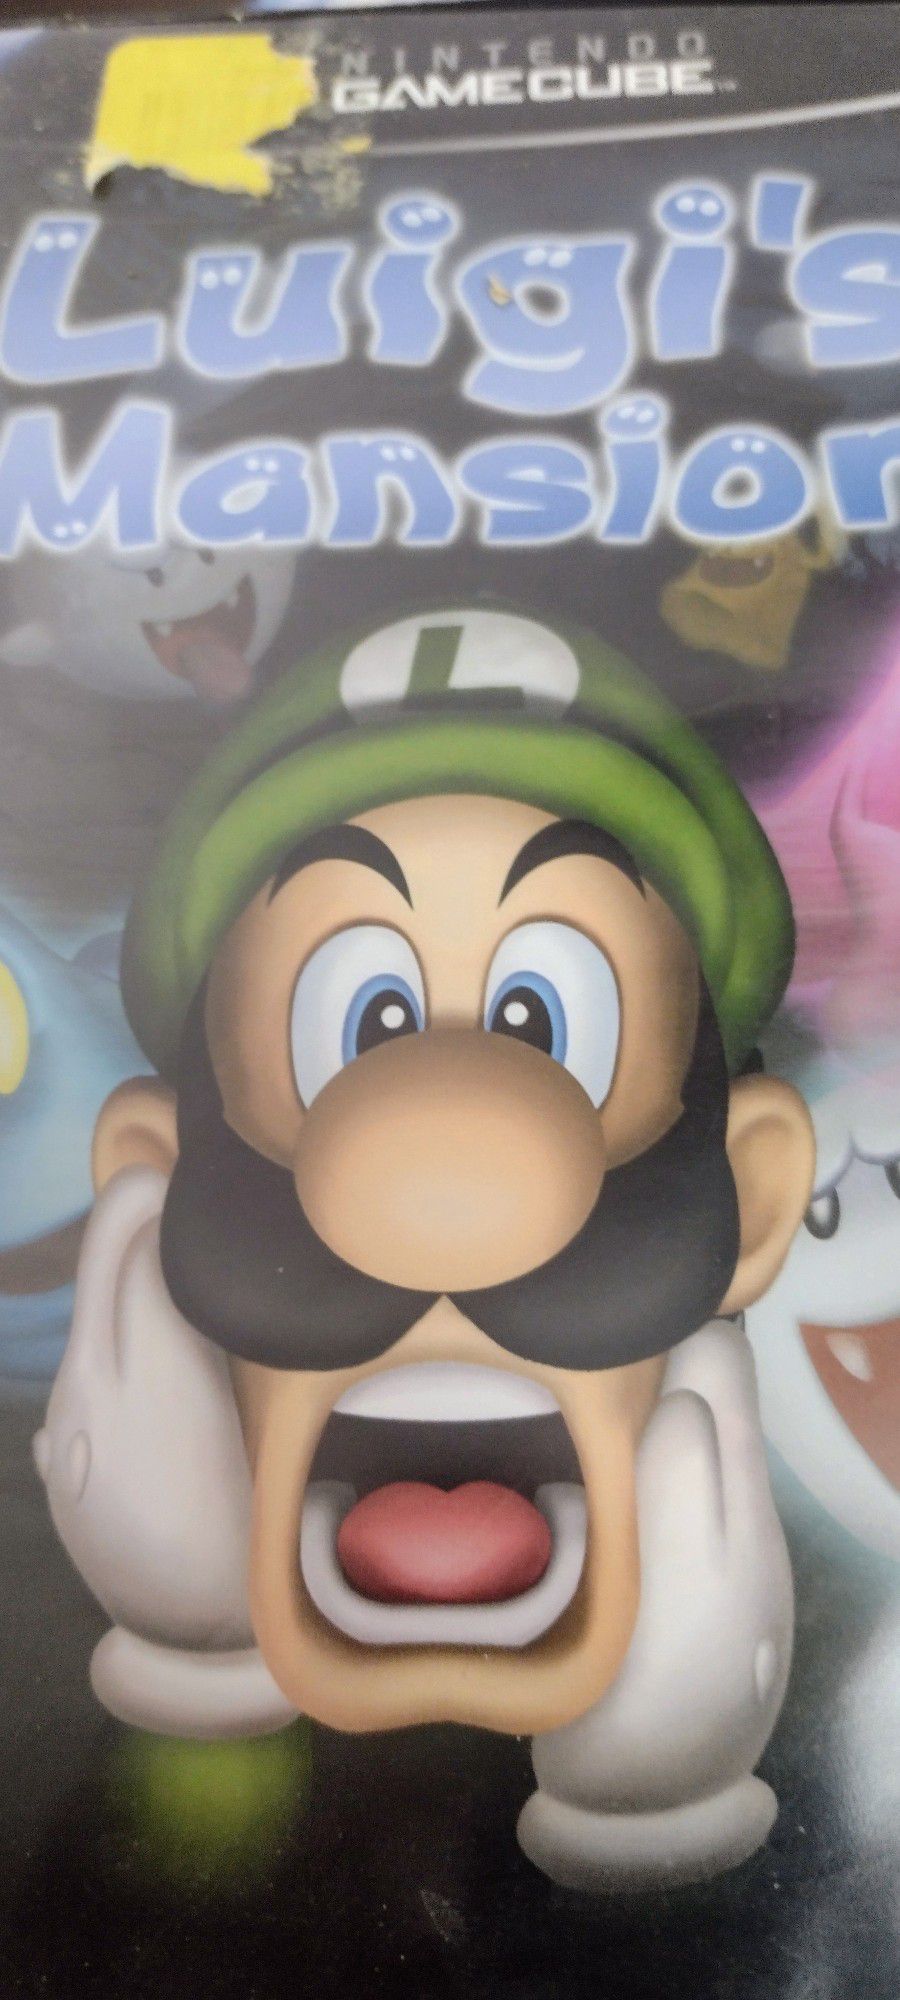 Nintendo GameCube Luigi's Mansion 